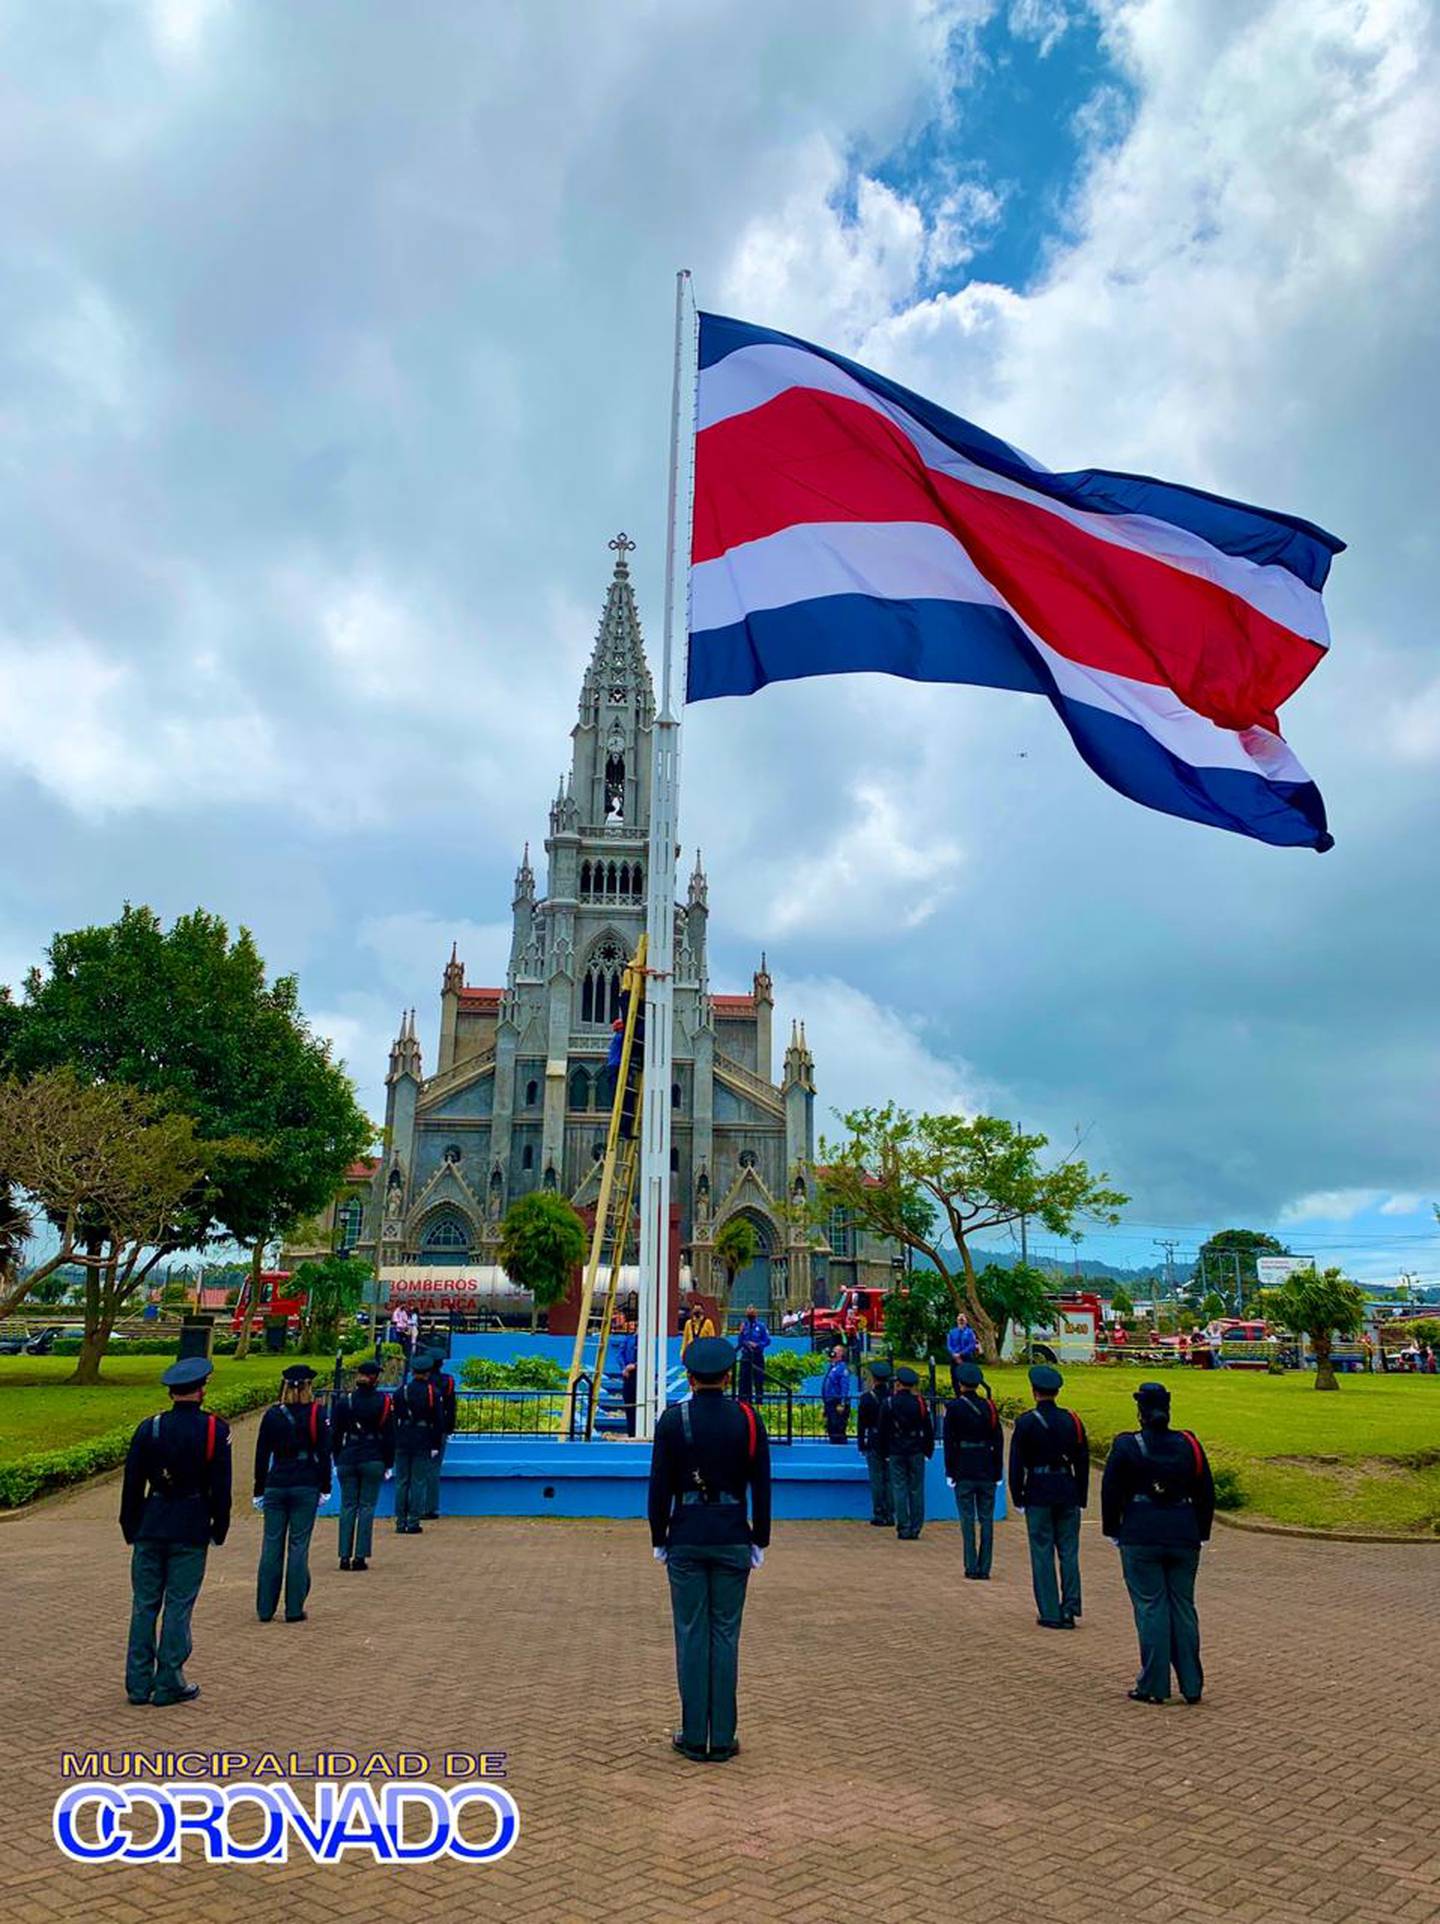 La bandera más grande de Costa Rica se izó el pasado 1 de setiembre en Coronado a encargo del alcalde del cantón que cada año durante el mes de la patria emperifolla con blanco, azul y rojo diferentes zonas. Fue hecha por Banderas del Mundo.